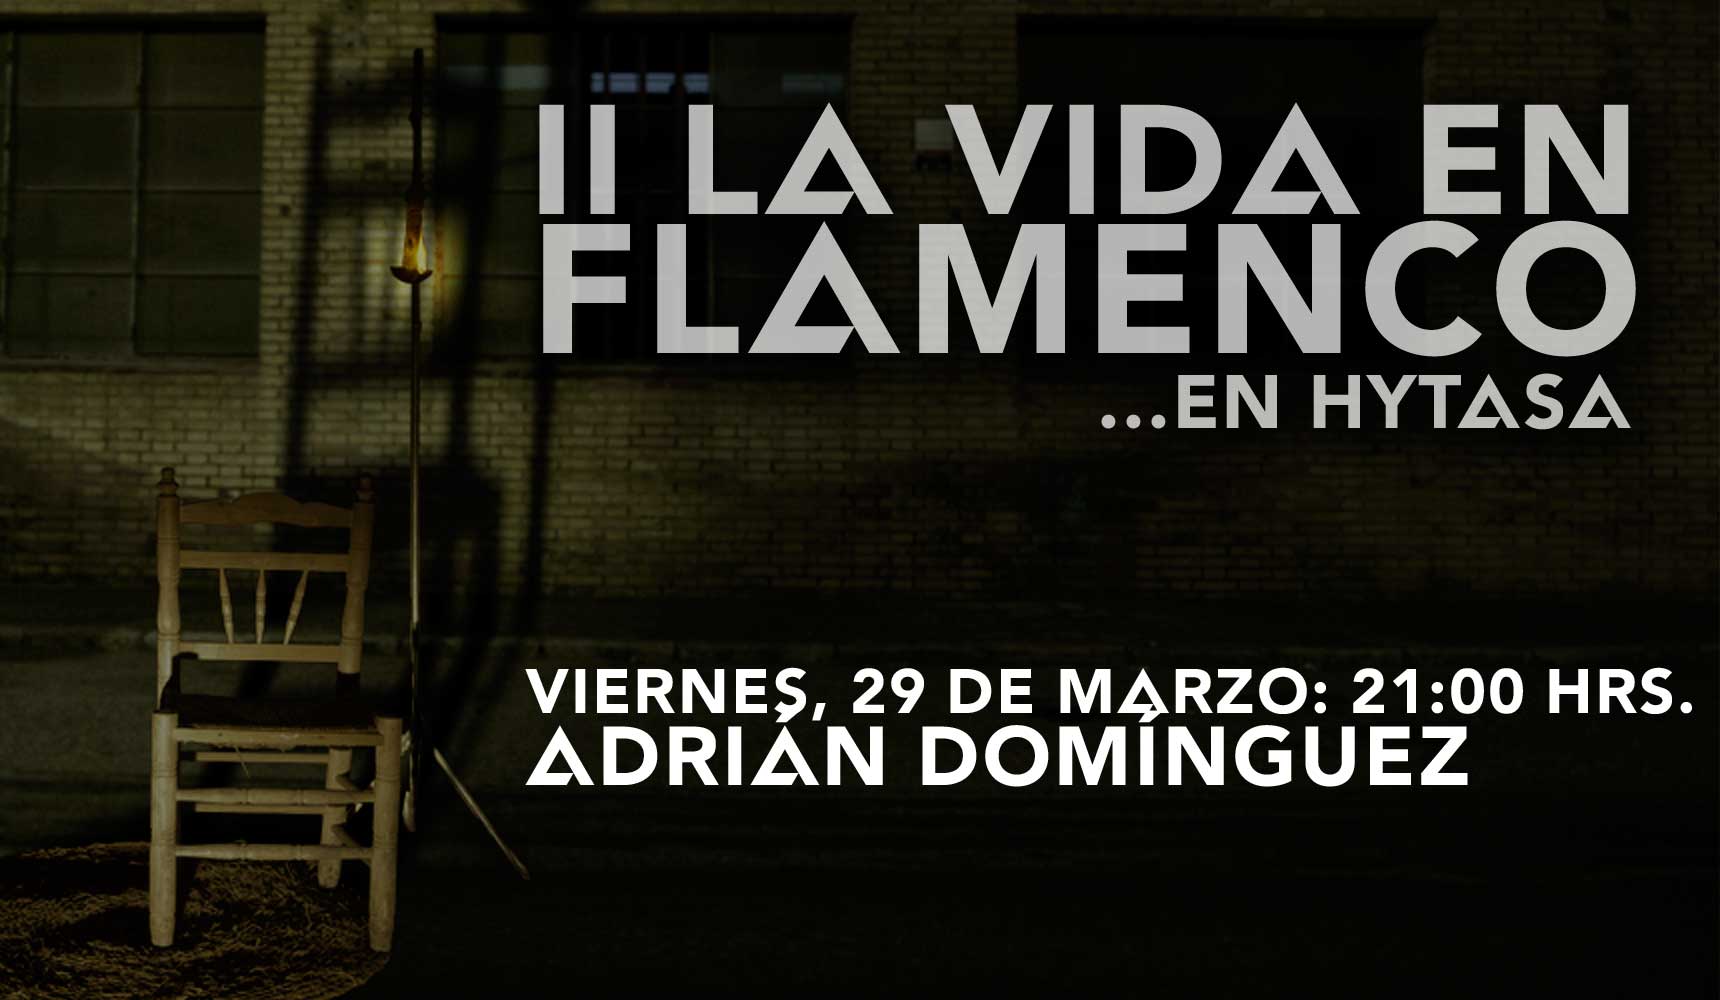 La Vida en Flamenco con Adrián Domínguez